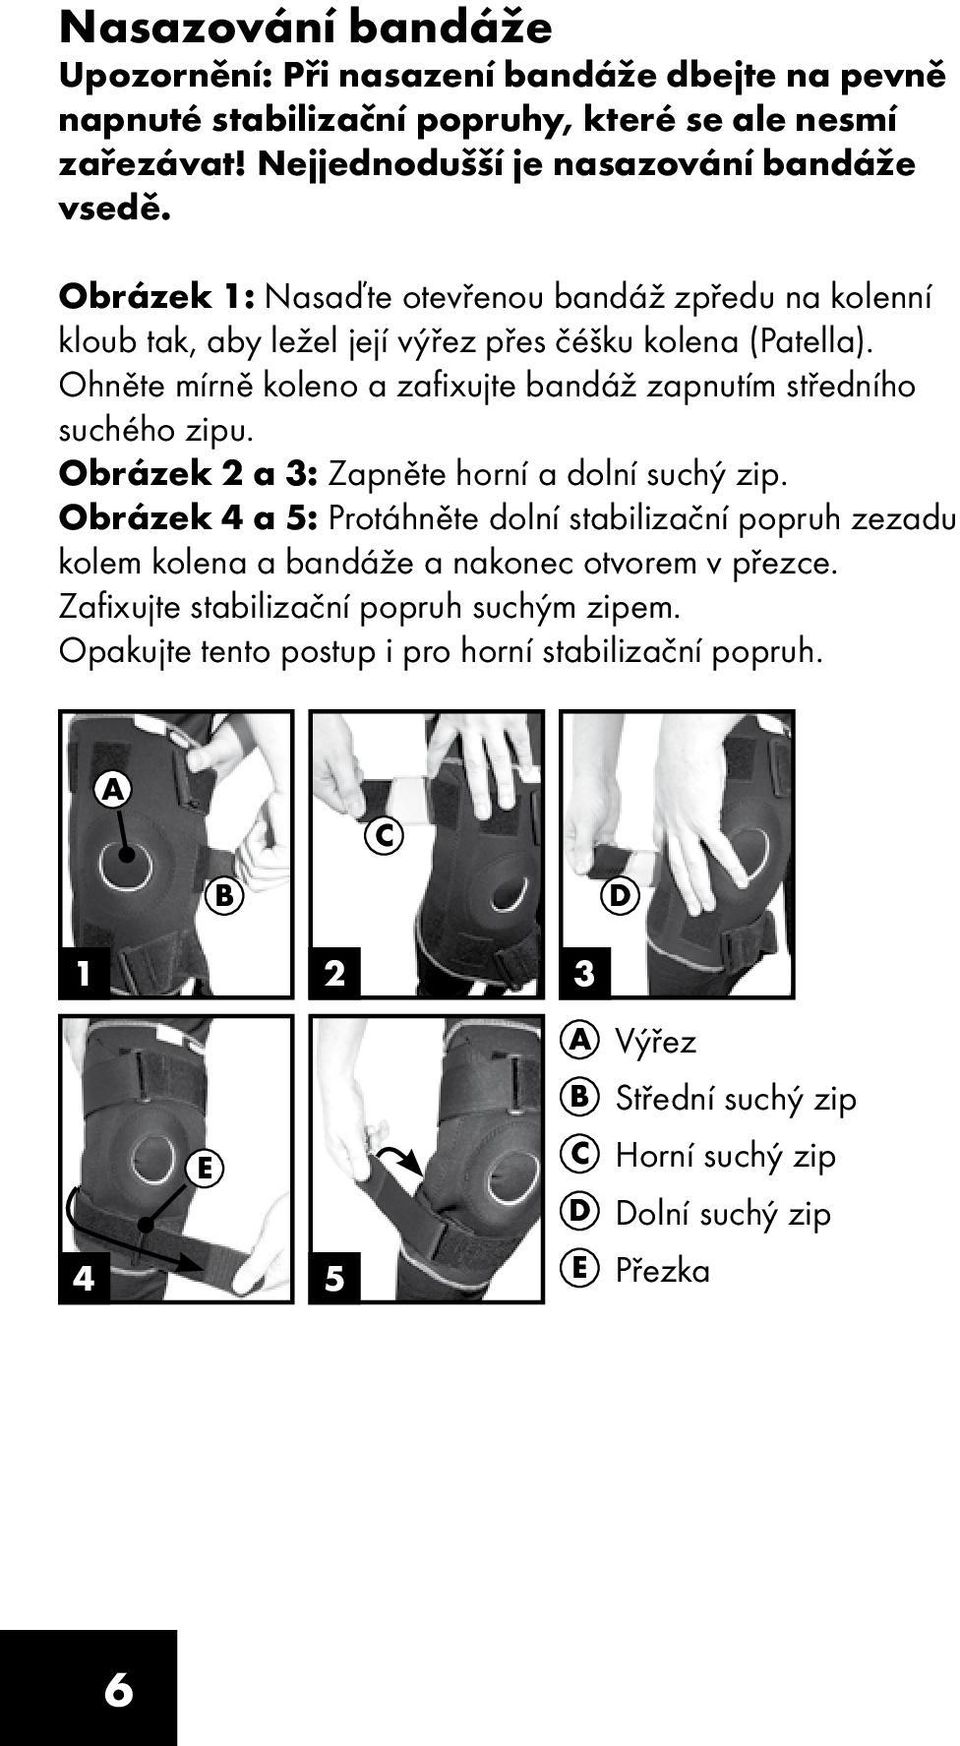 Ohněte mírně koleno a zafixujte bandáž zapnutím středního suchého zipu. Obrázek 2 a 3: Zapněte horní a dolní suchý zip.